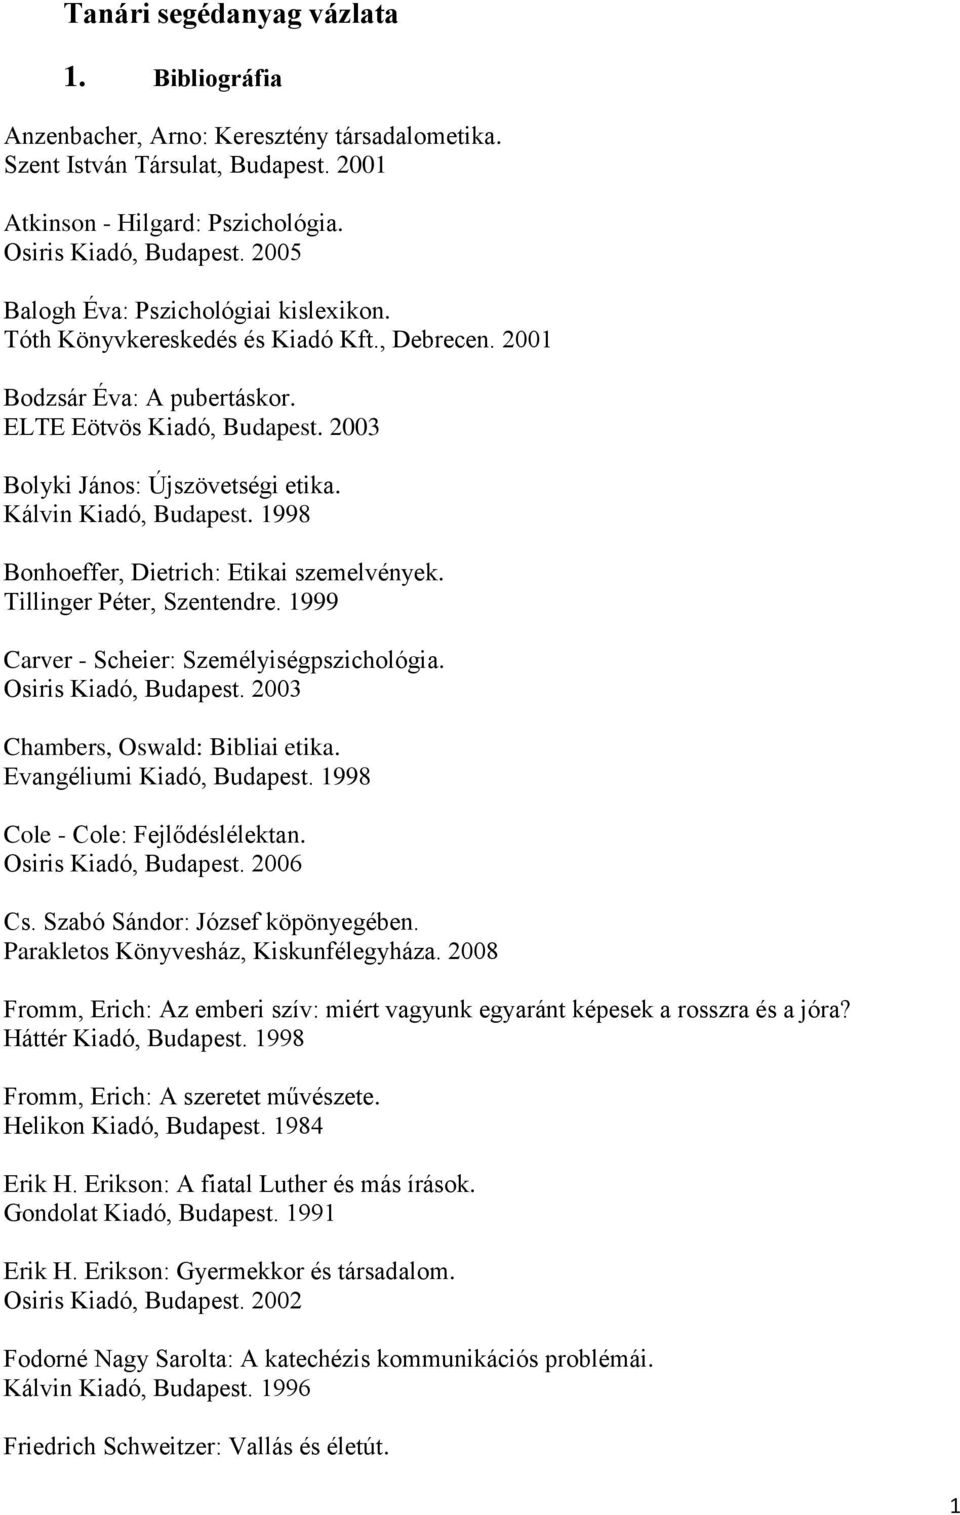 Kálvin Kiadó, Budapest. 1998 Bonhoeffer, Dietrich: Etikai szemelvények. Tillinger Péter, Szentendre. 1999 Carver - Scheier: Személyiségpszichológia. Osiris Kiadó, Budapest.